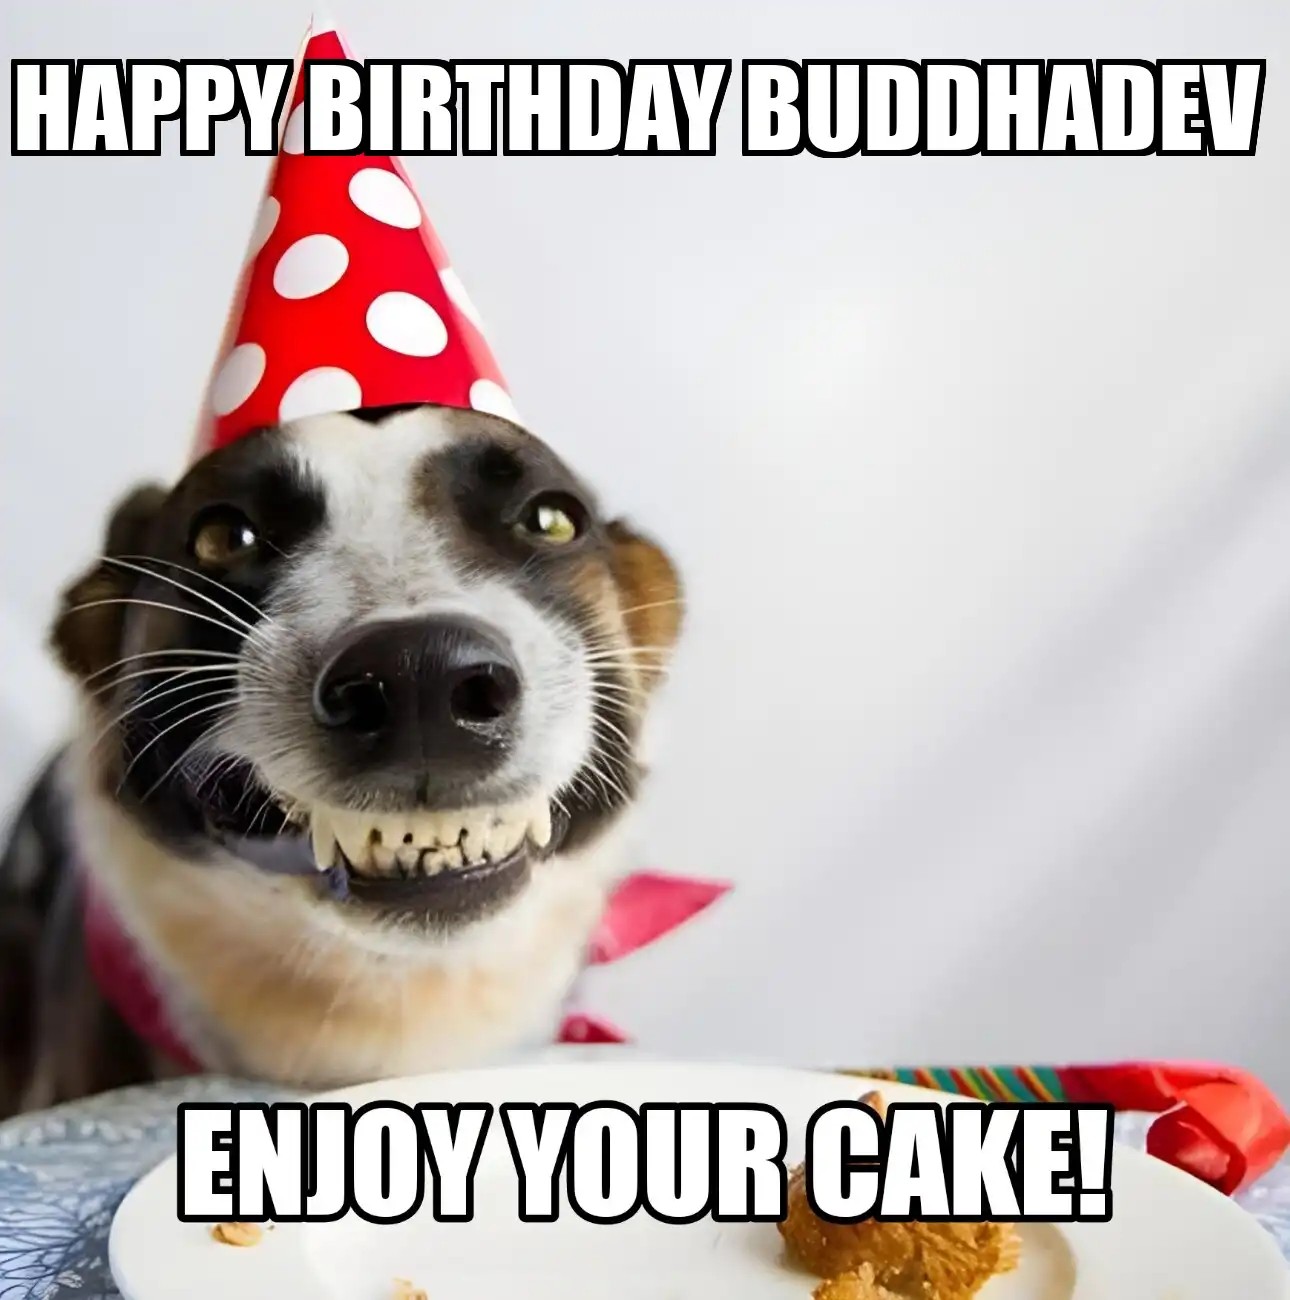 Happy Birthday Buddhadev Enjoy Your Cake Dog Meme